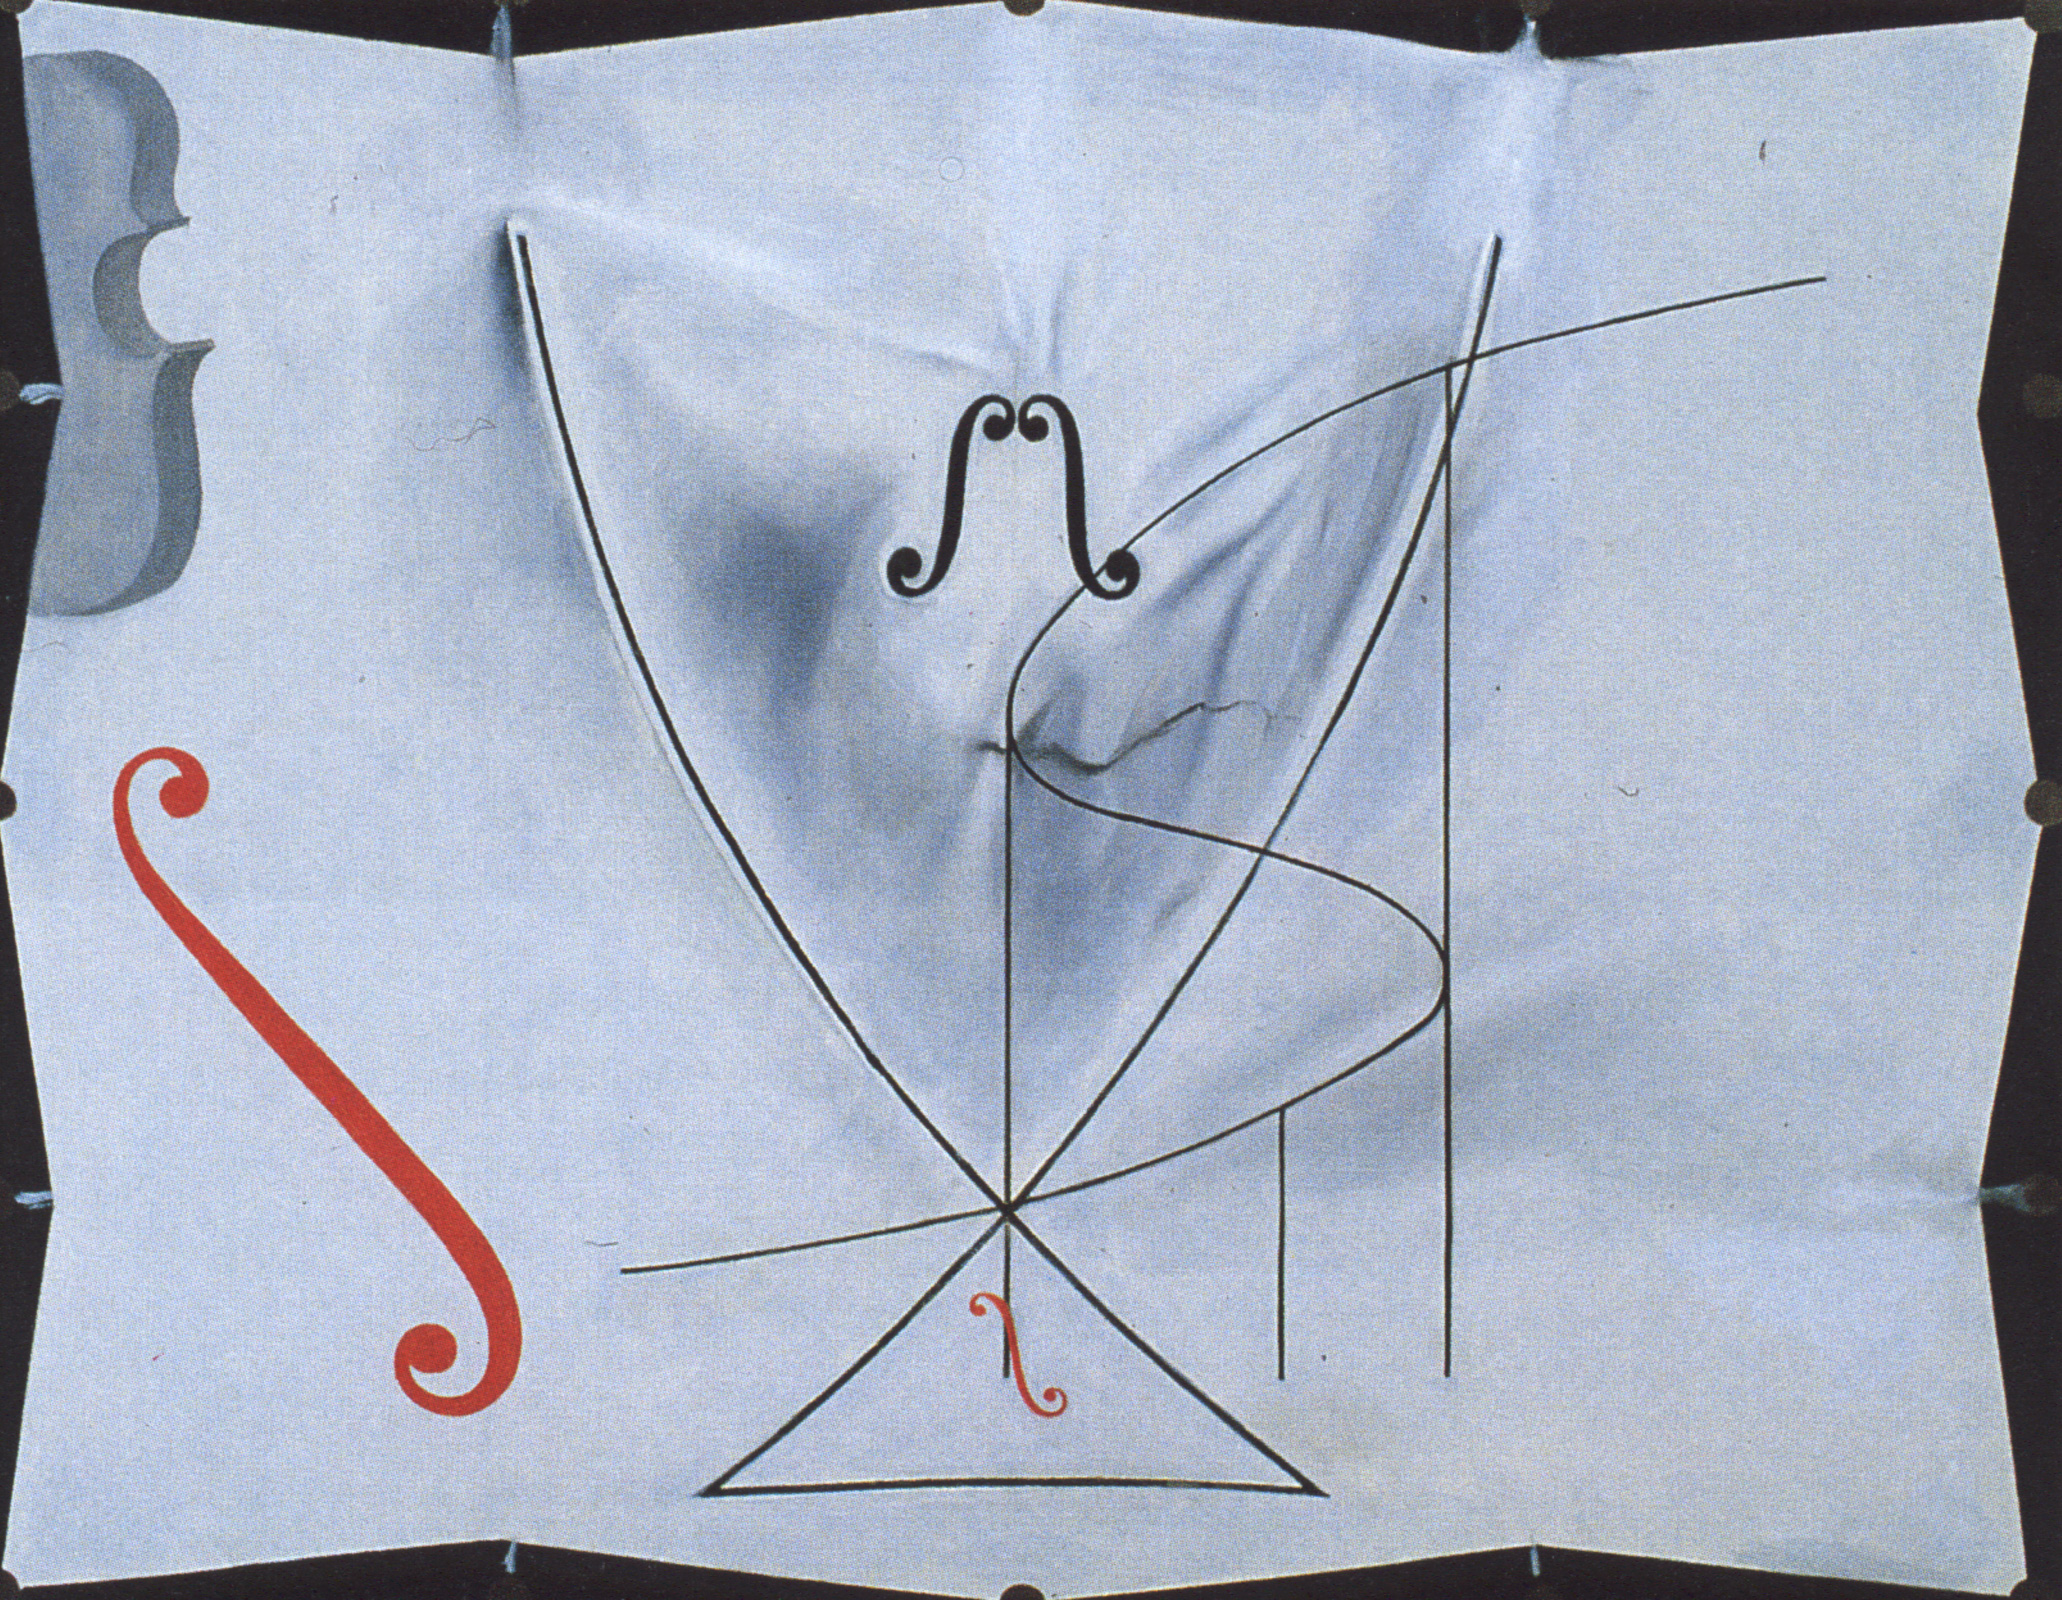 Ogon Jaskółki by Salvador Dalí - 1983 - 73 x 92.2 cm 